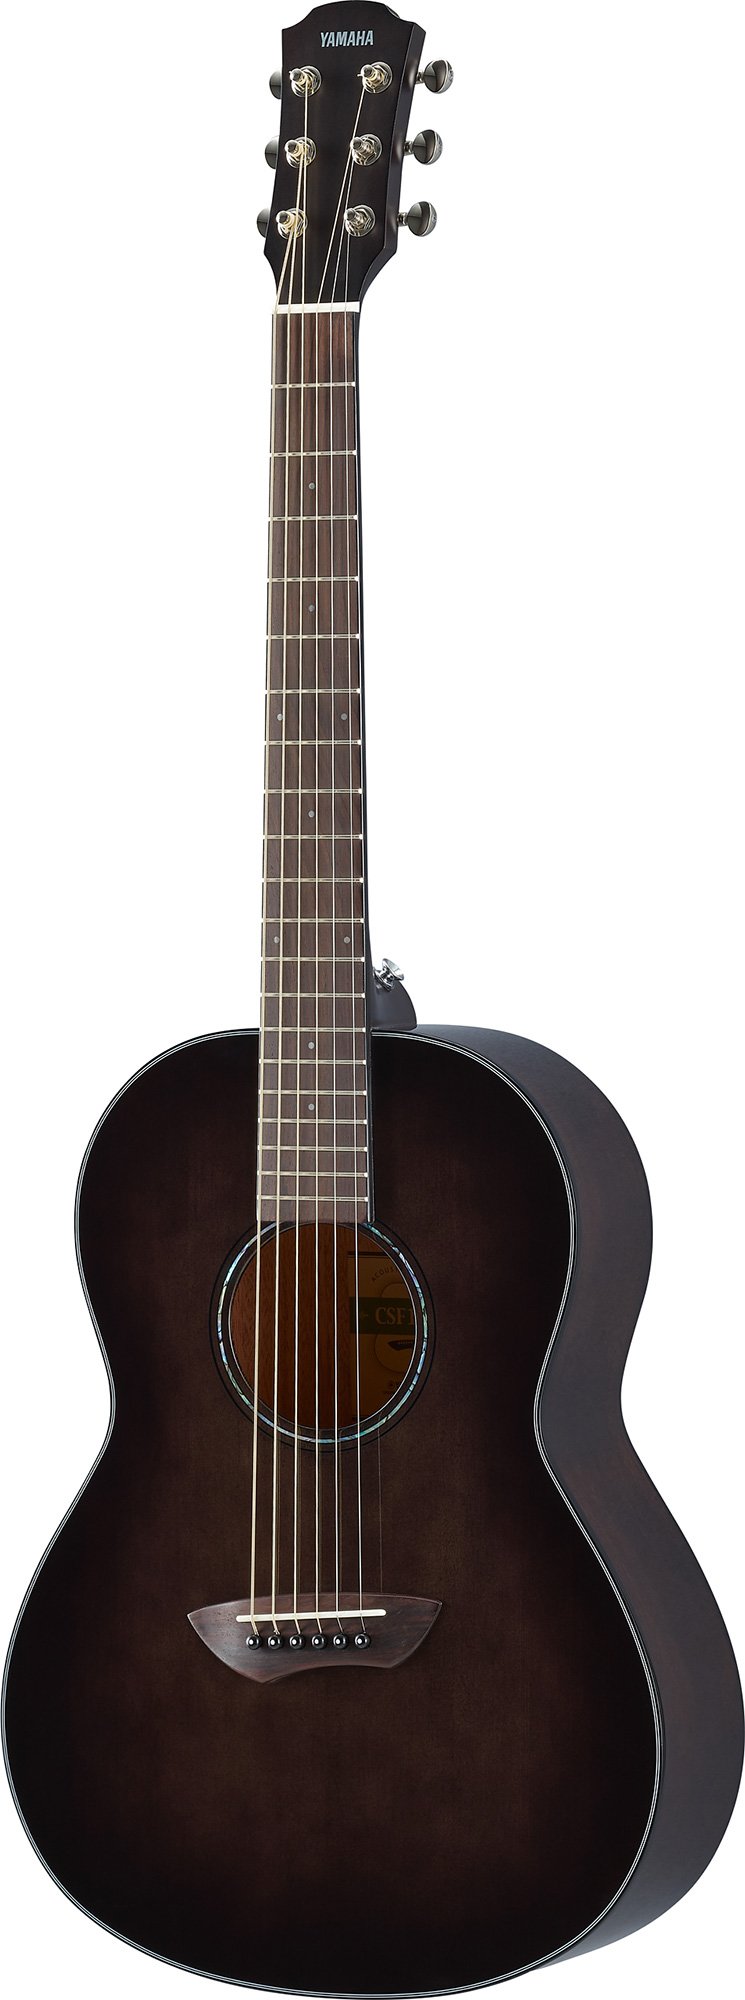 アコースティックギター YAMAHA CSF-60 - 楽器、器材